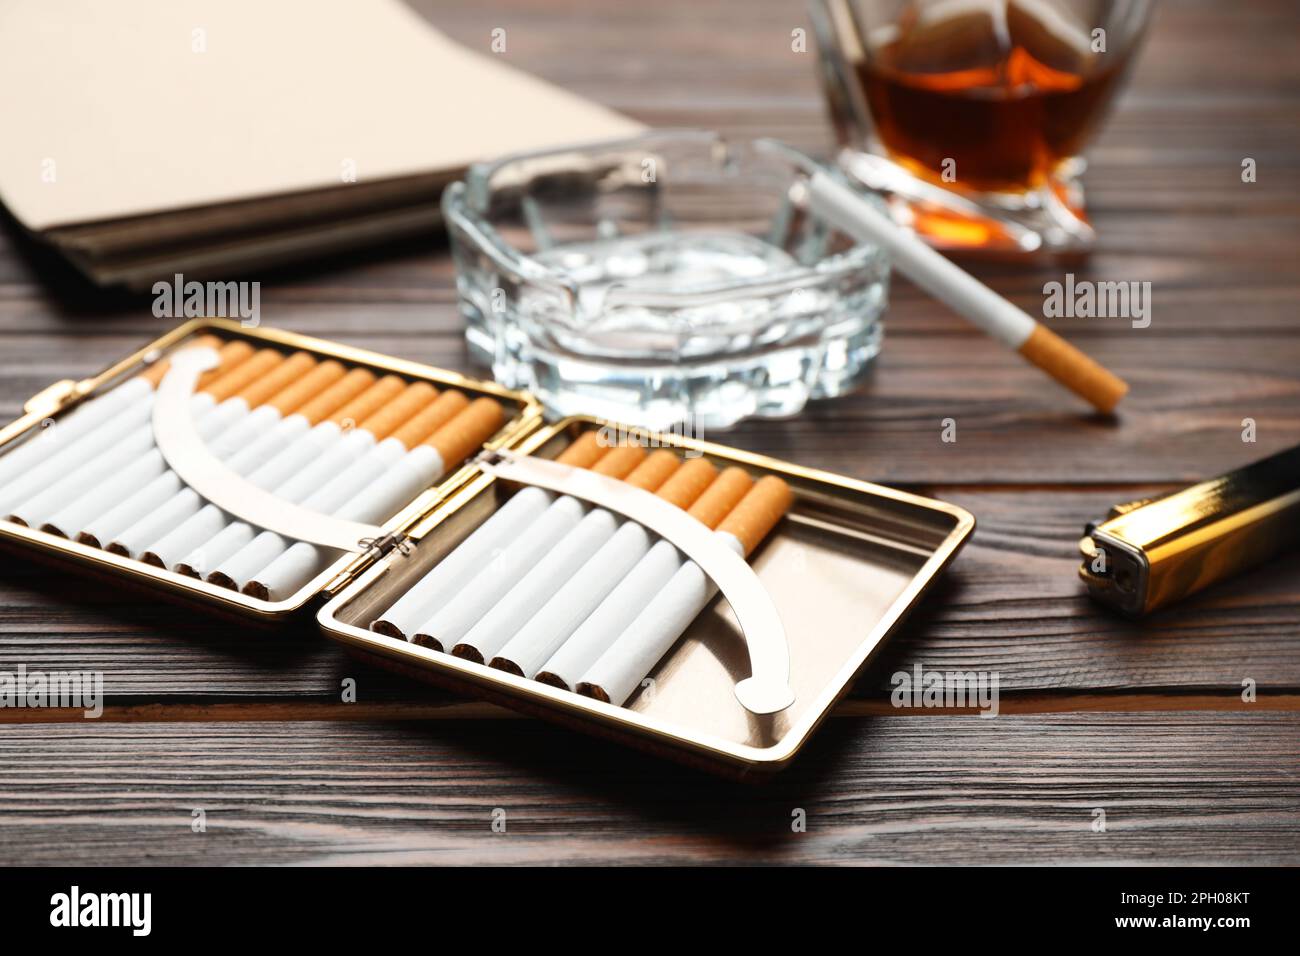 Offener Koffer mit Tabakfilterzigaretten, Aschenbecher, Alkoholgetränk und Feuerzeug auf Holztisch, Nahaufnahme Stockfoto